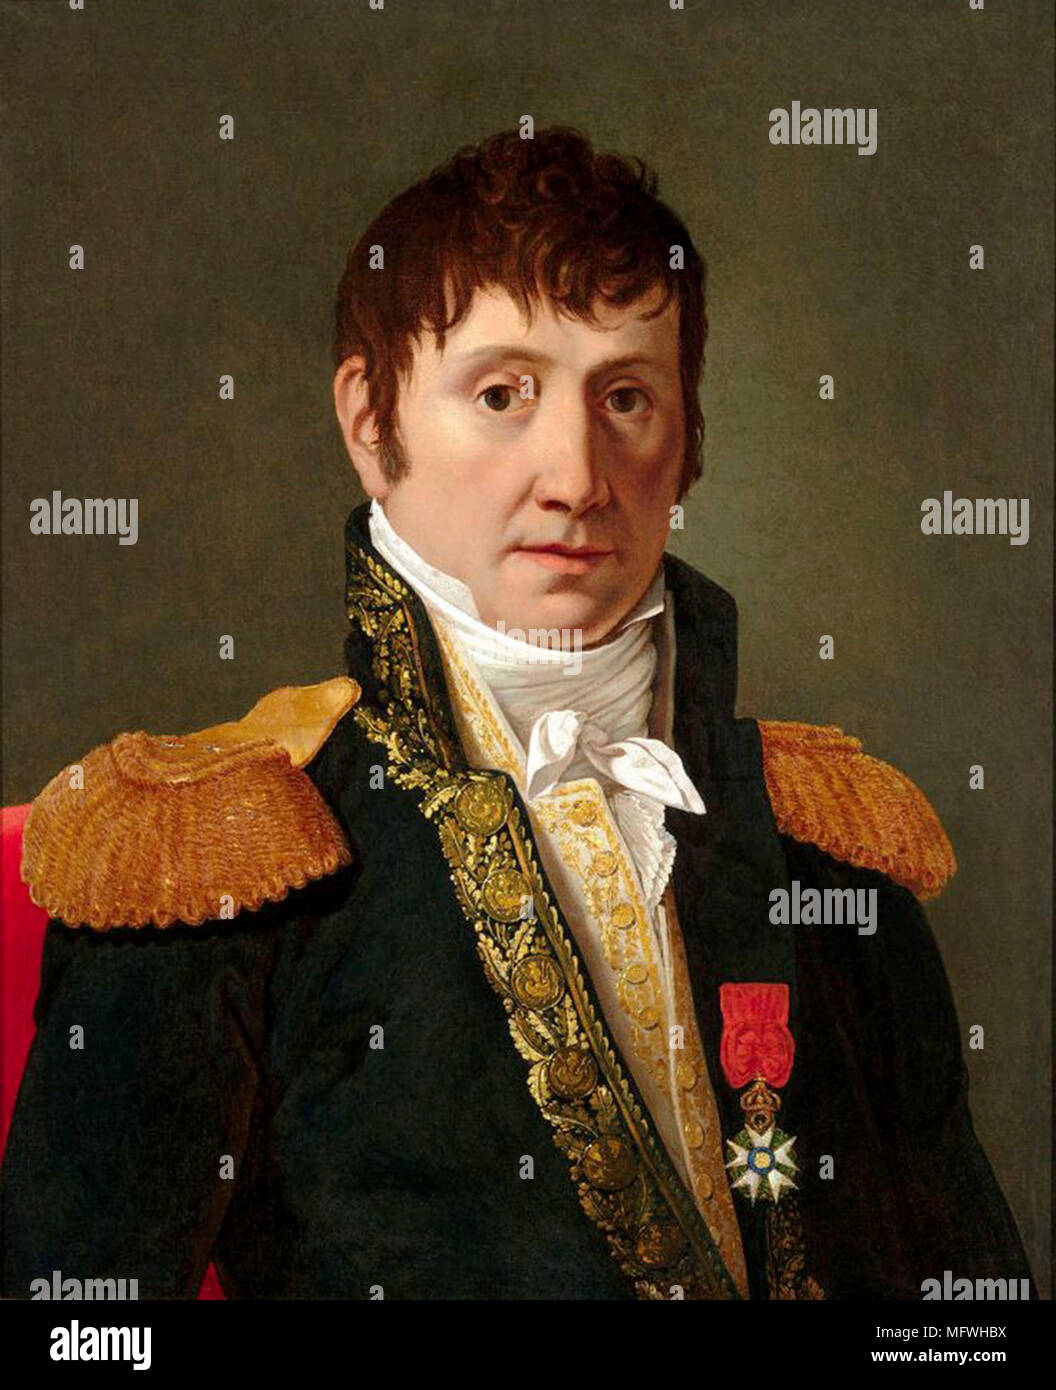 Marshal General Jean-de-Dieu Soult, 1. Herzog von Dalmatien, (1769-1851), französischer General und Staatsmann, Marschall des Kaiserreichs 1804 und oft als Marschall Soult. Der Herzog diente auch drei Mal als Präsident des Ministerrates oder Premierminister von Frankreich. Stockfoto